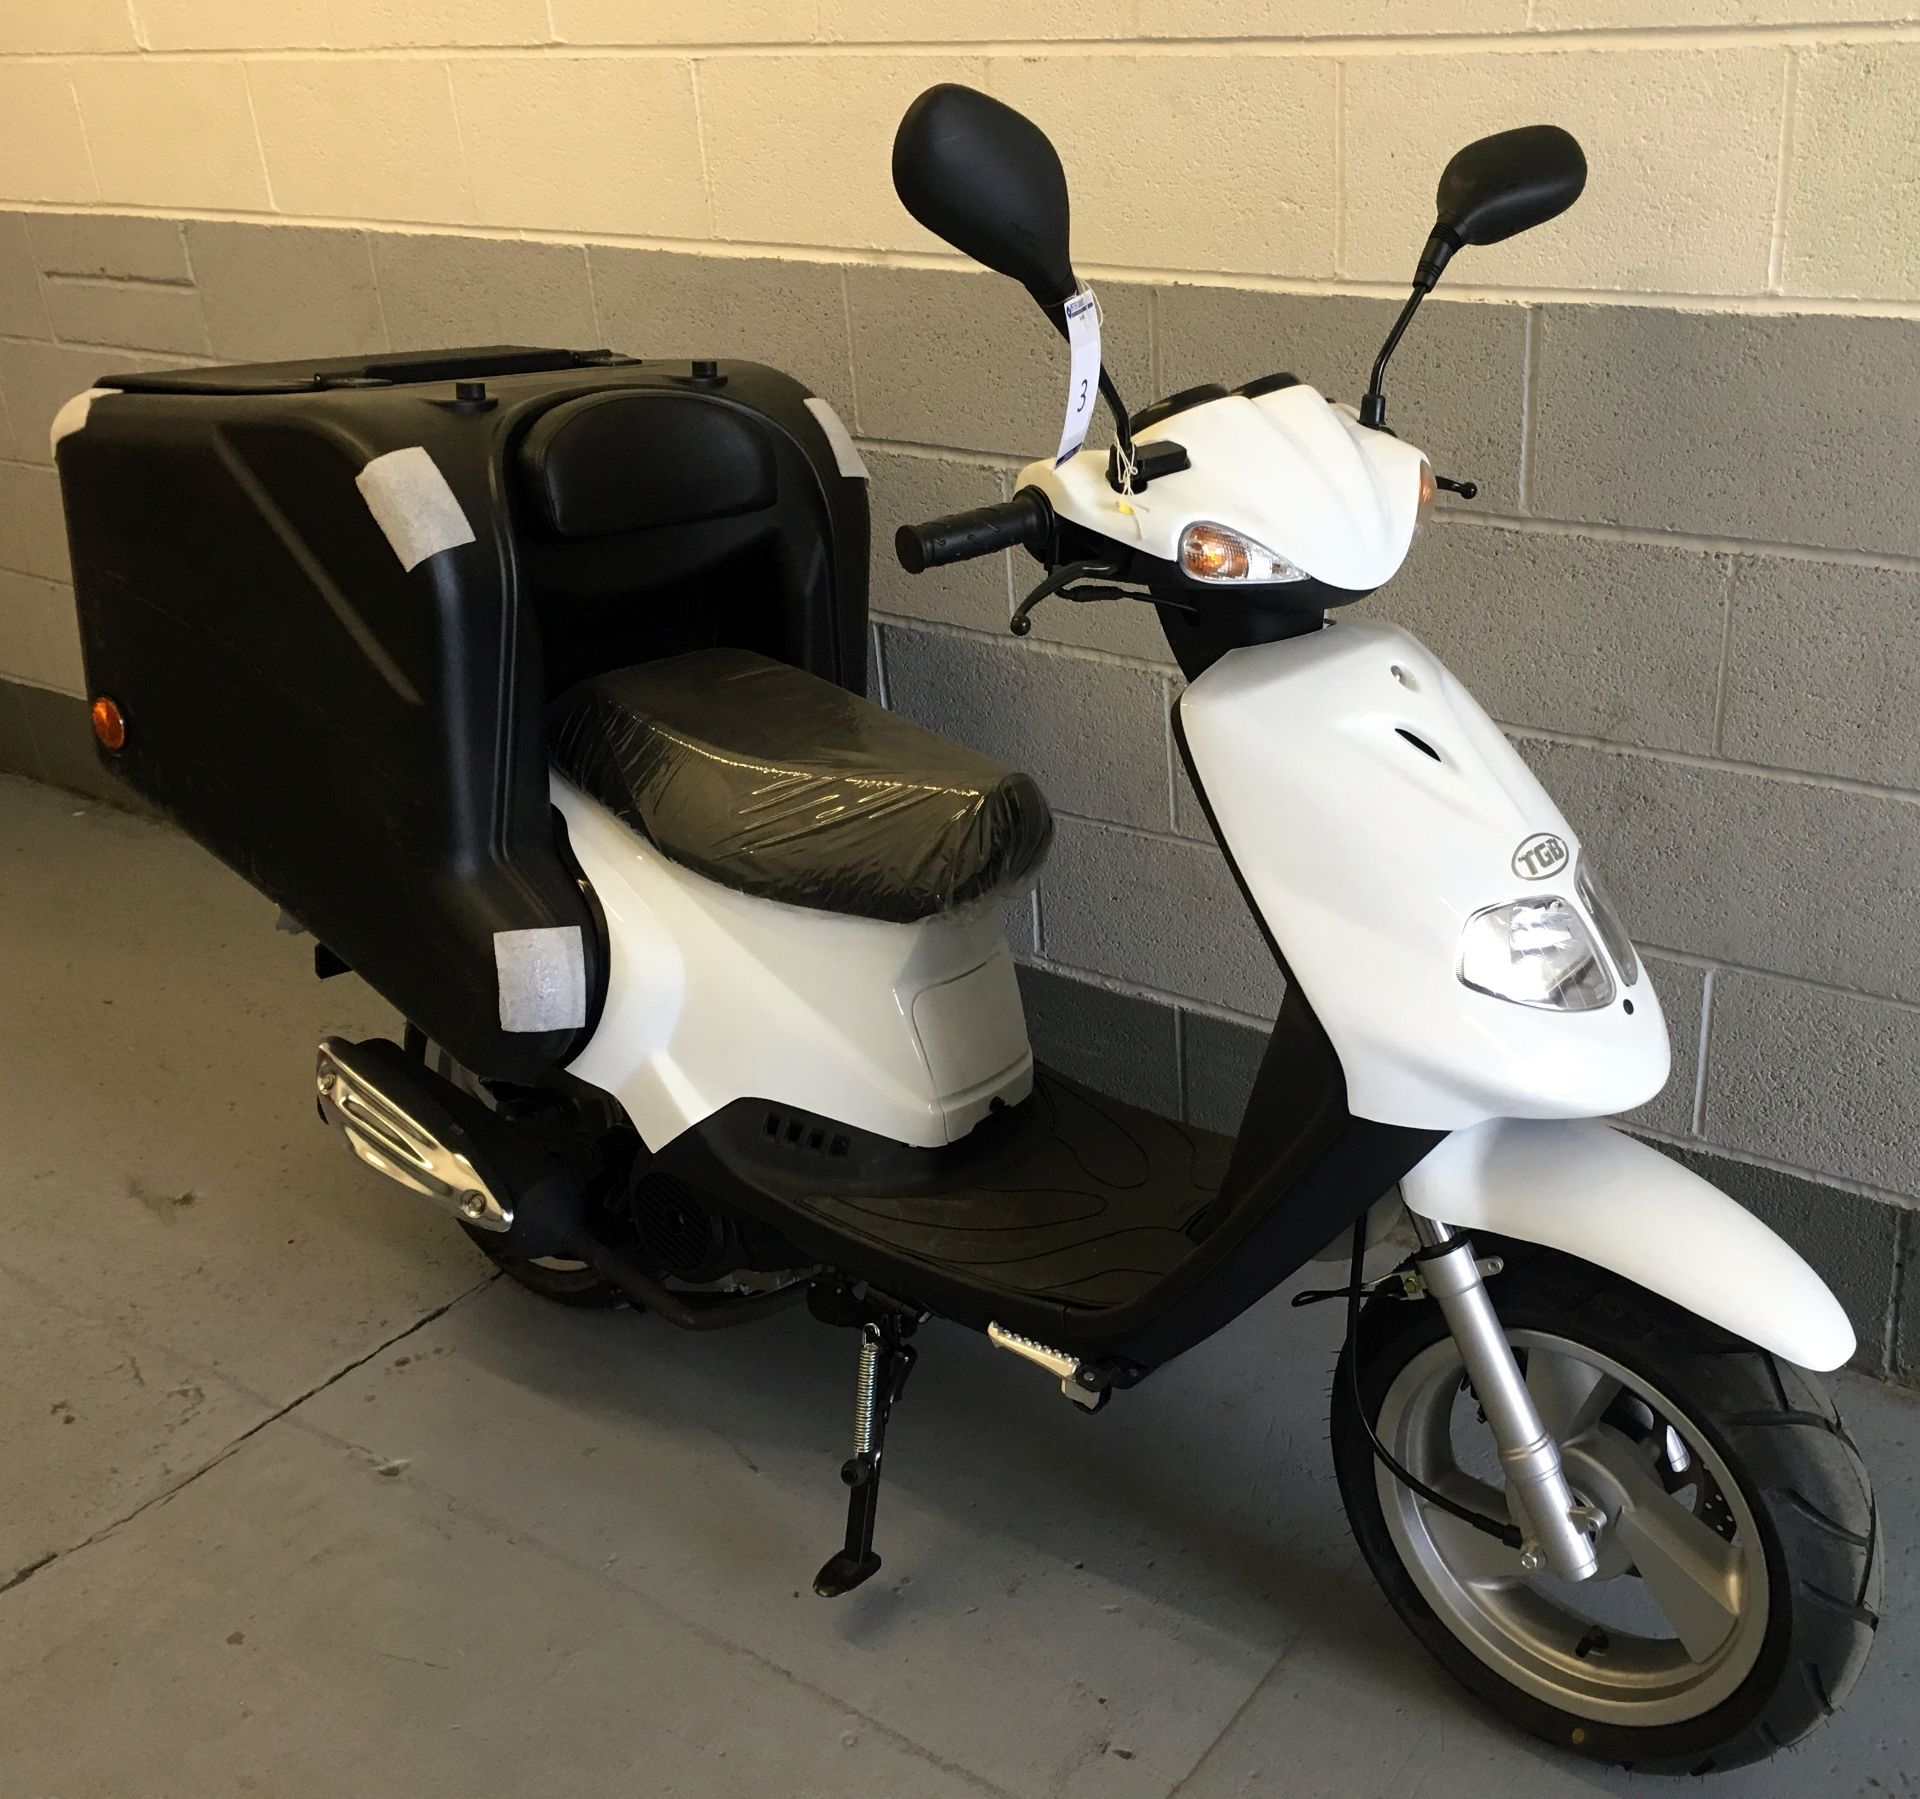 2016 TGB Delivery 125cc Scooter, Registration KE65 CVT, Odometer Reading 9 Miles, First Registered - Image 4 of 6